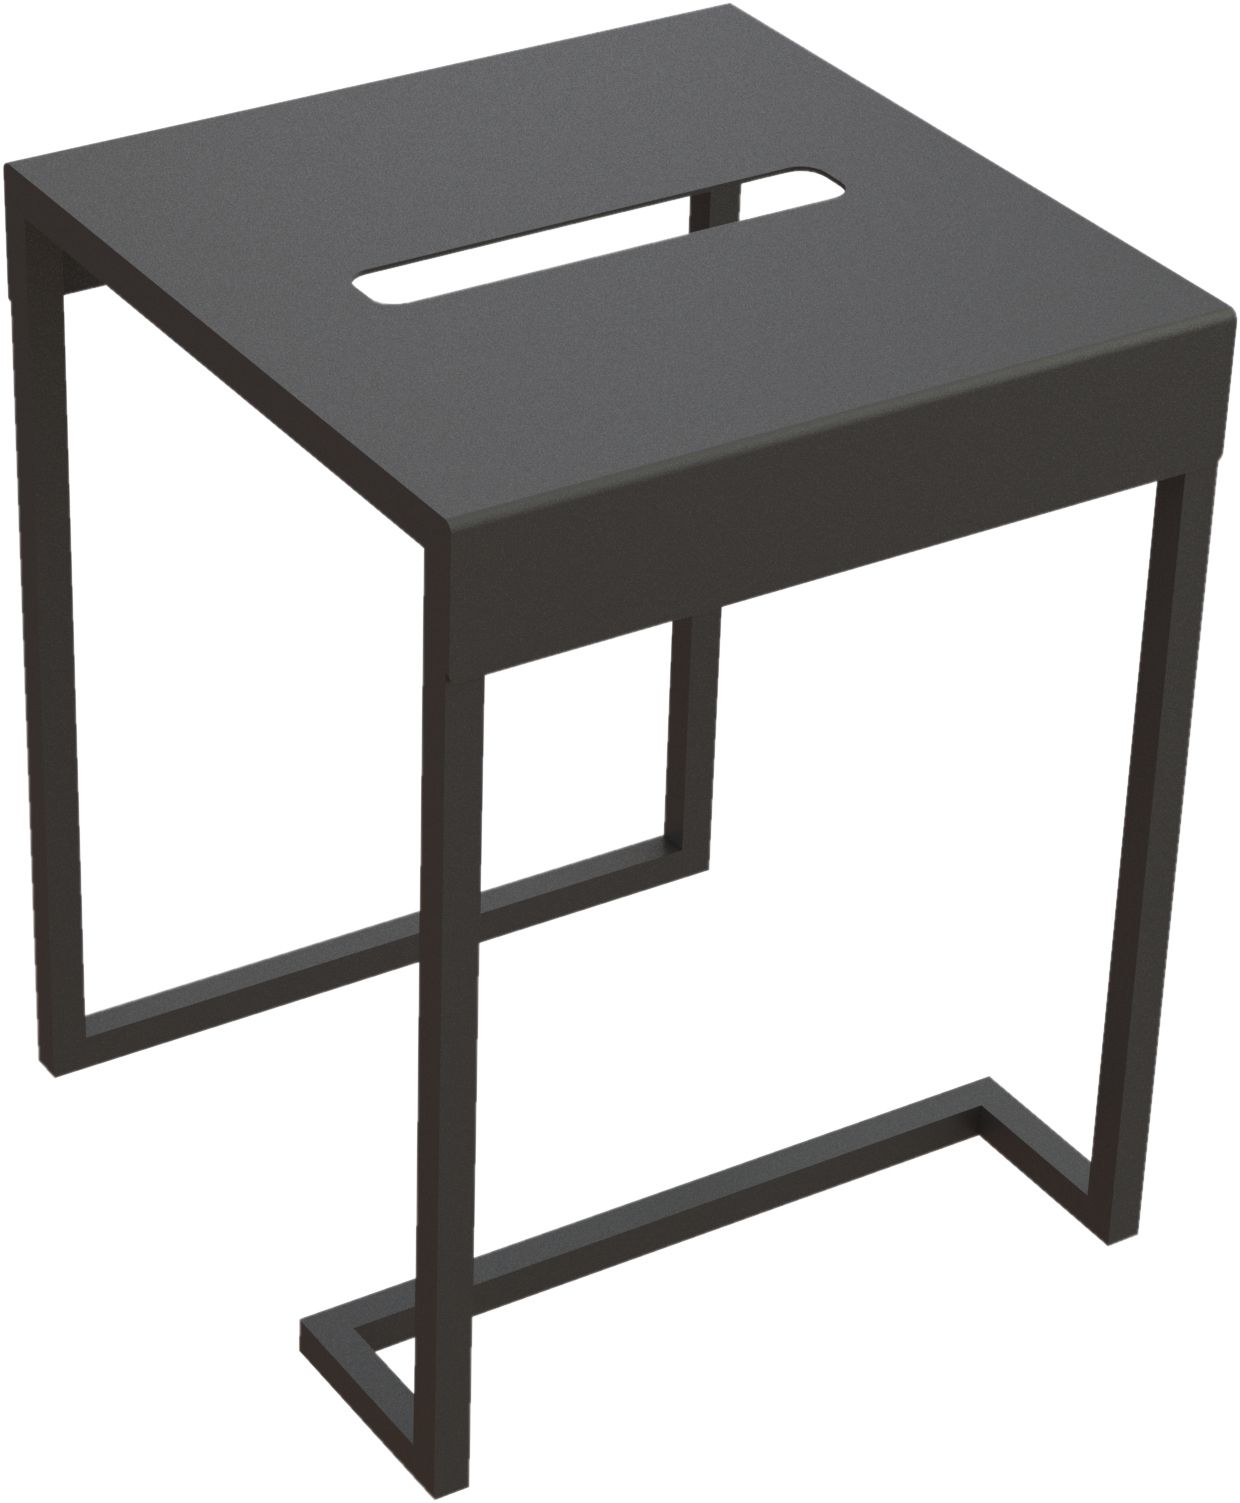 Taboret - stolik łazienkowy - ADM_N51T - Główne zdjęcie produktowe